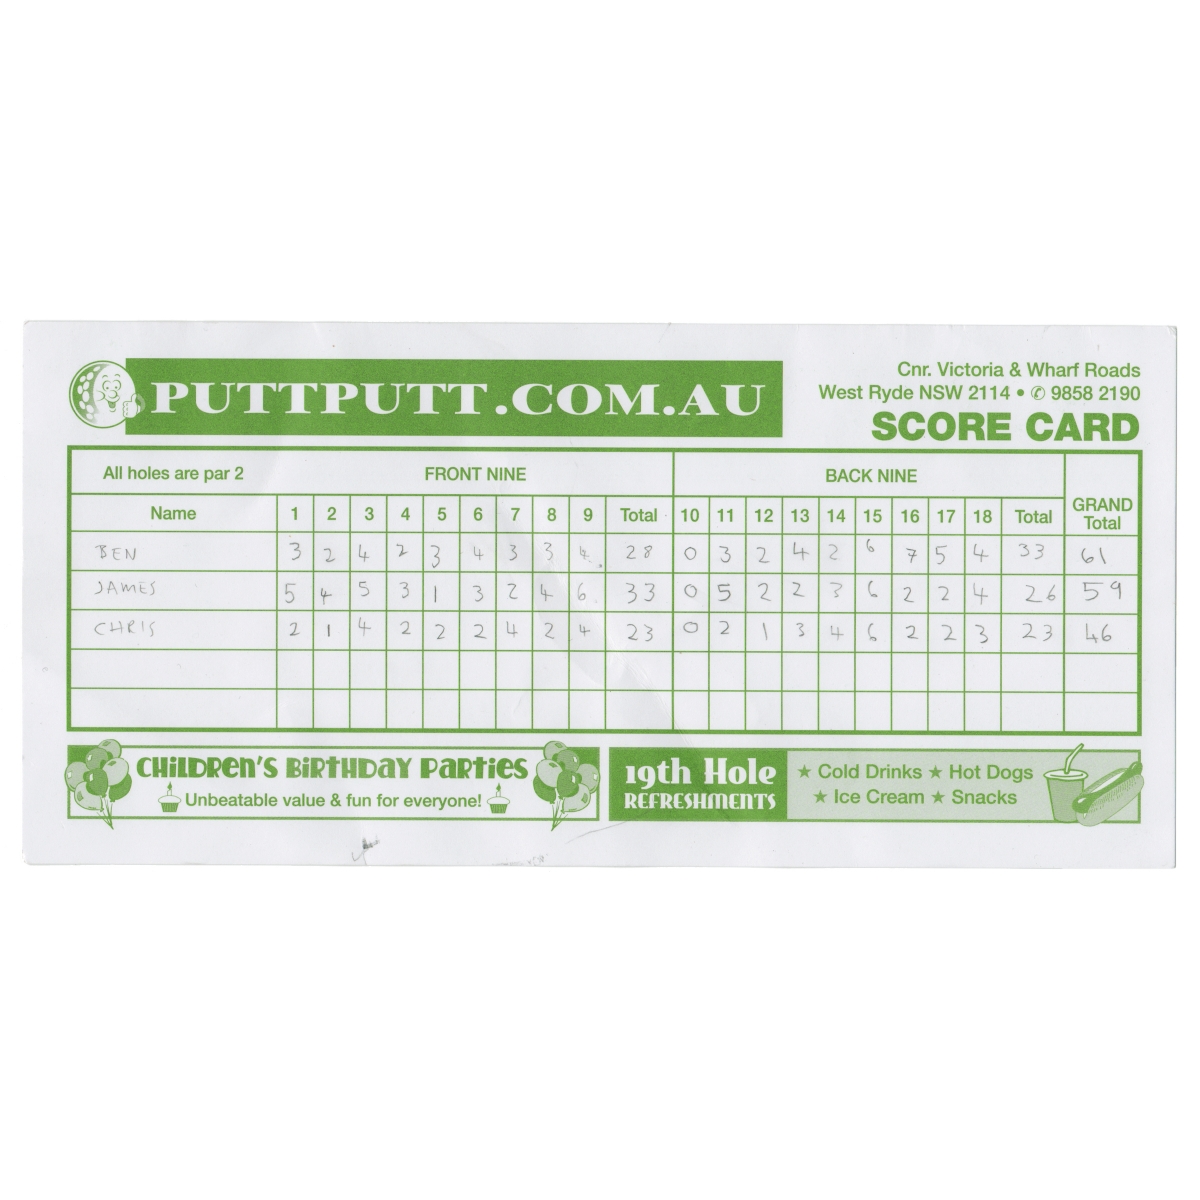 Put put golf score card.